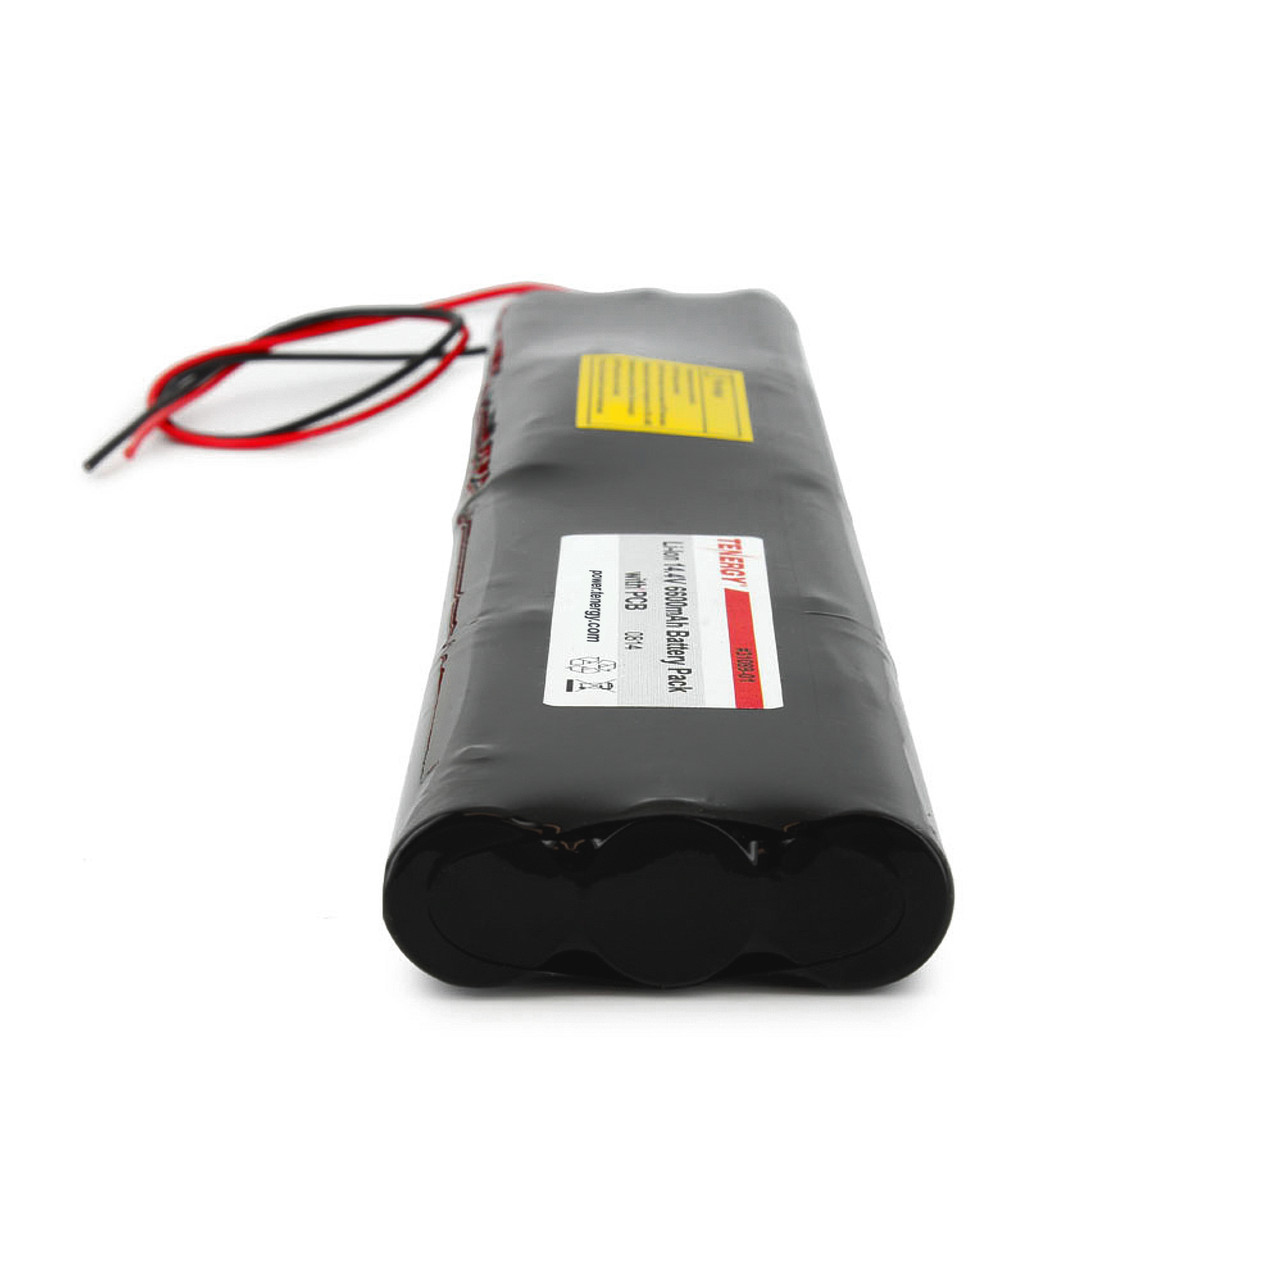 Tenergy 9V 600mAh Li-ion Rechargeable Battery